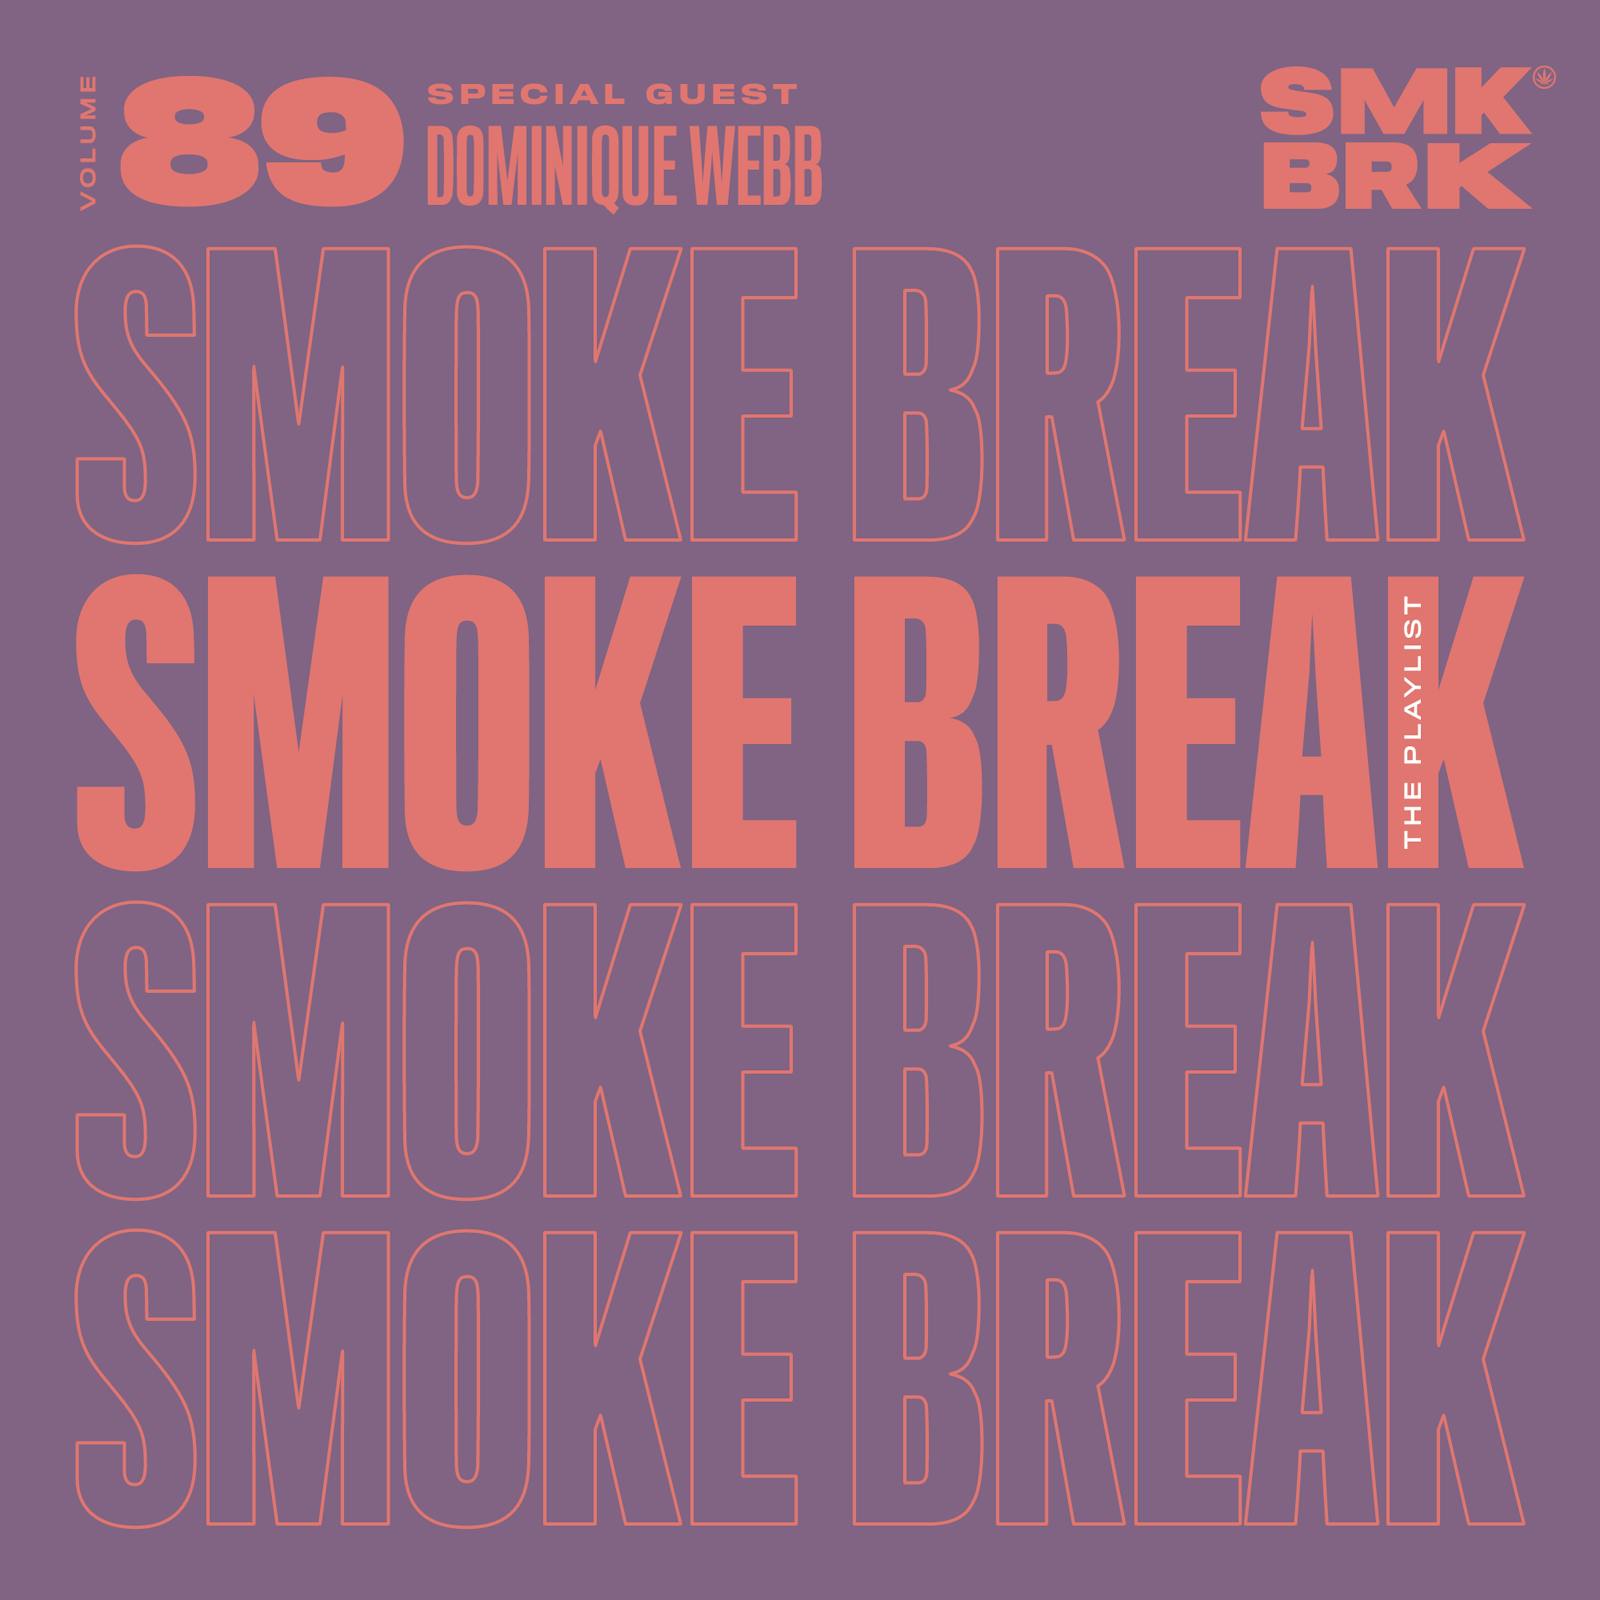 👩🏽‍💻 SmkBreak Vol. #89: My Smoke Playlist 💨